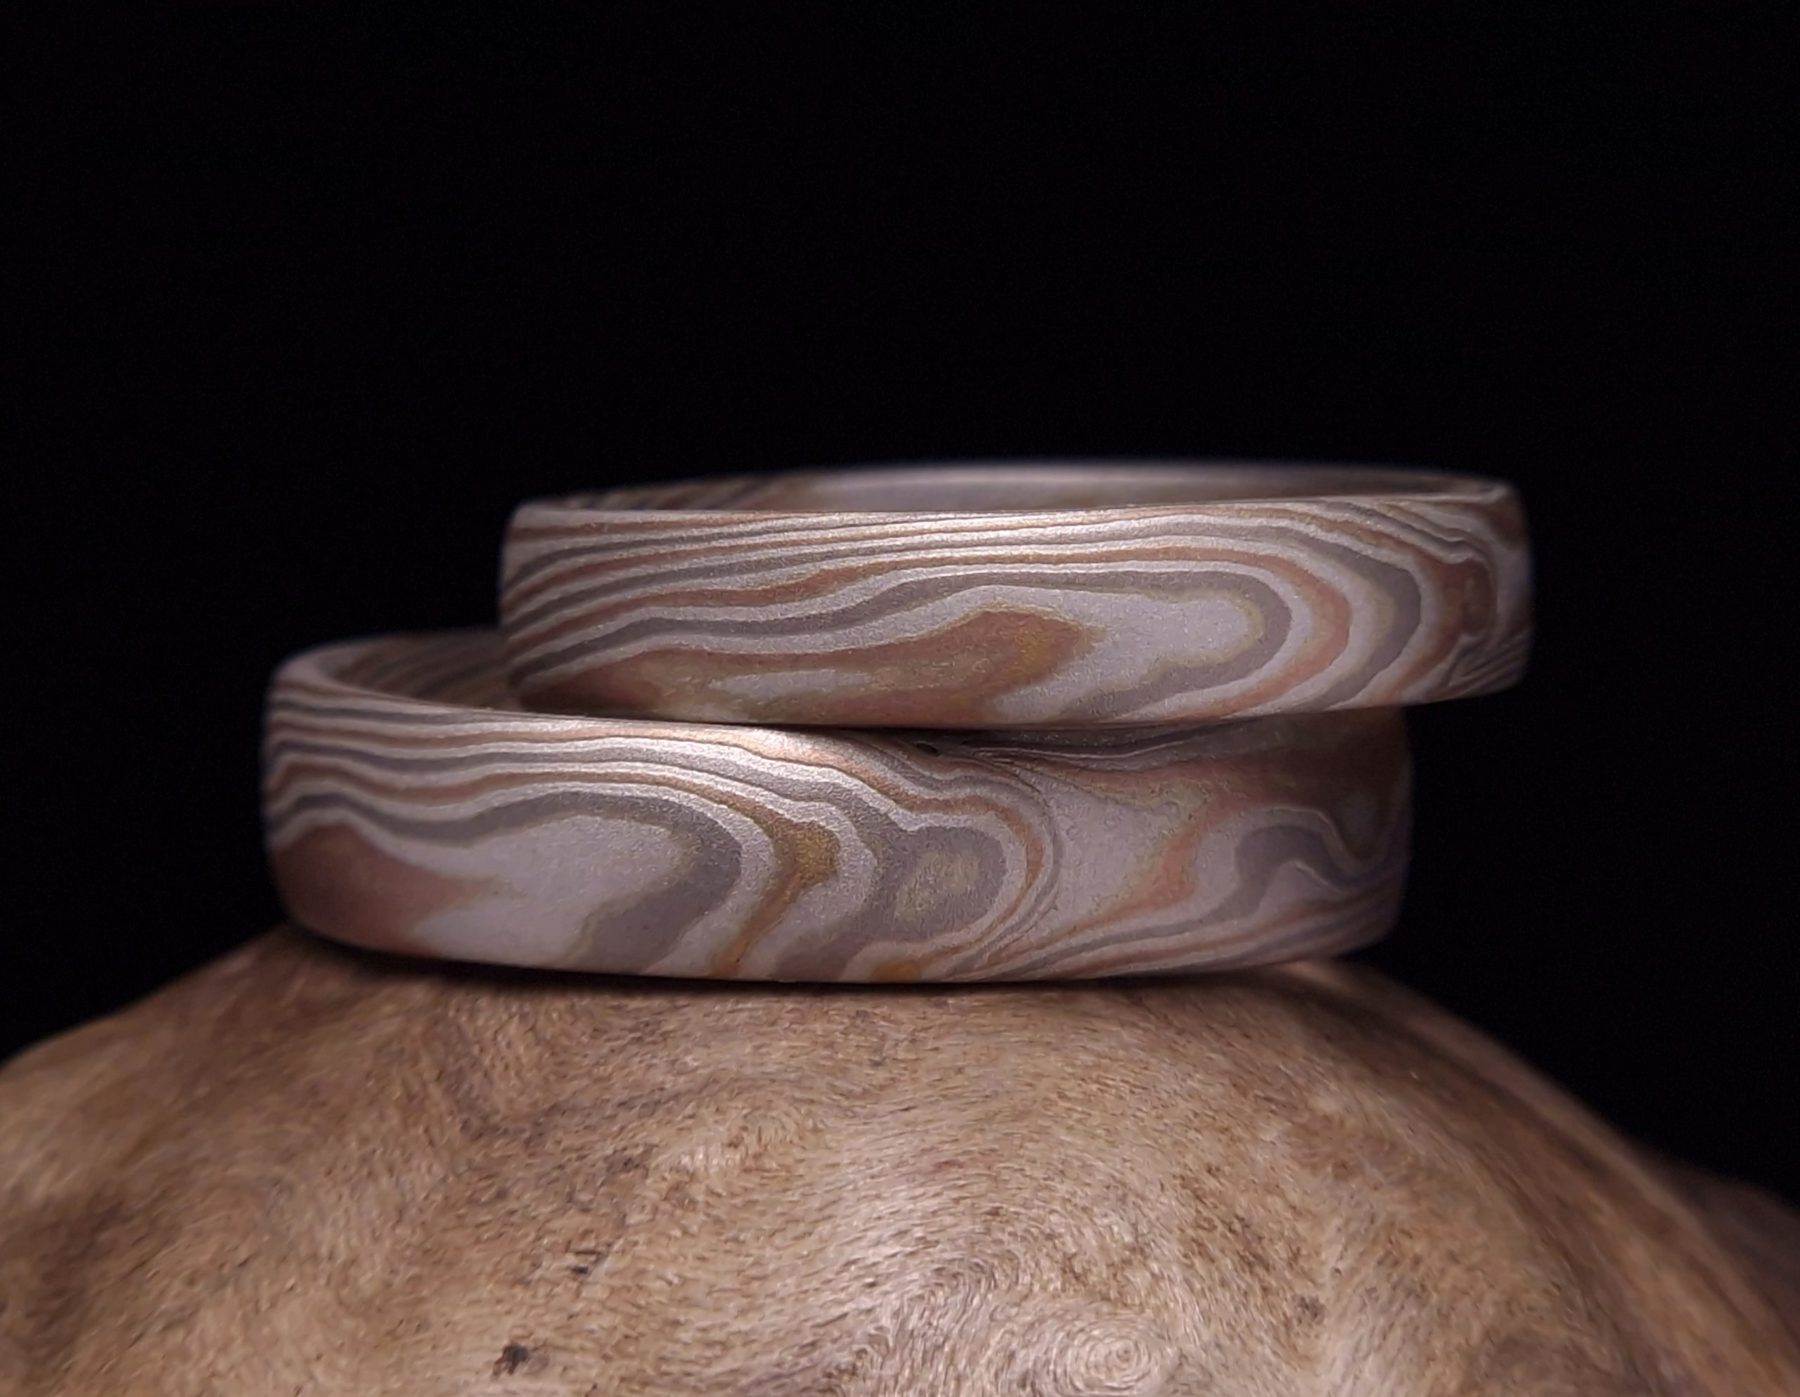 Mokume gane prsteny, vyrobené z vrstev bílého paladiového zlata 585 , červeného zlata 585 a stříbra. Klasický mokume gane vzor, připomínající léta dřeva.